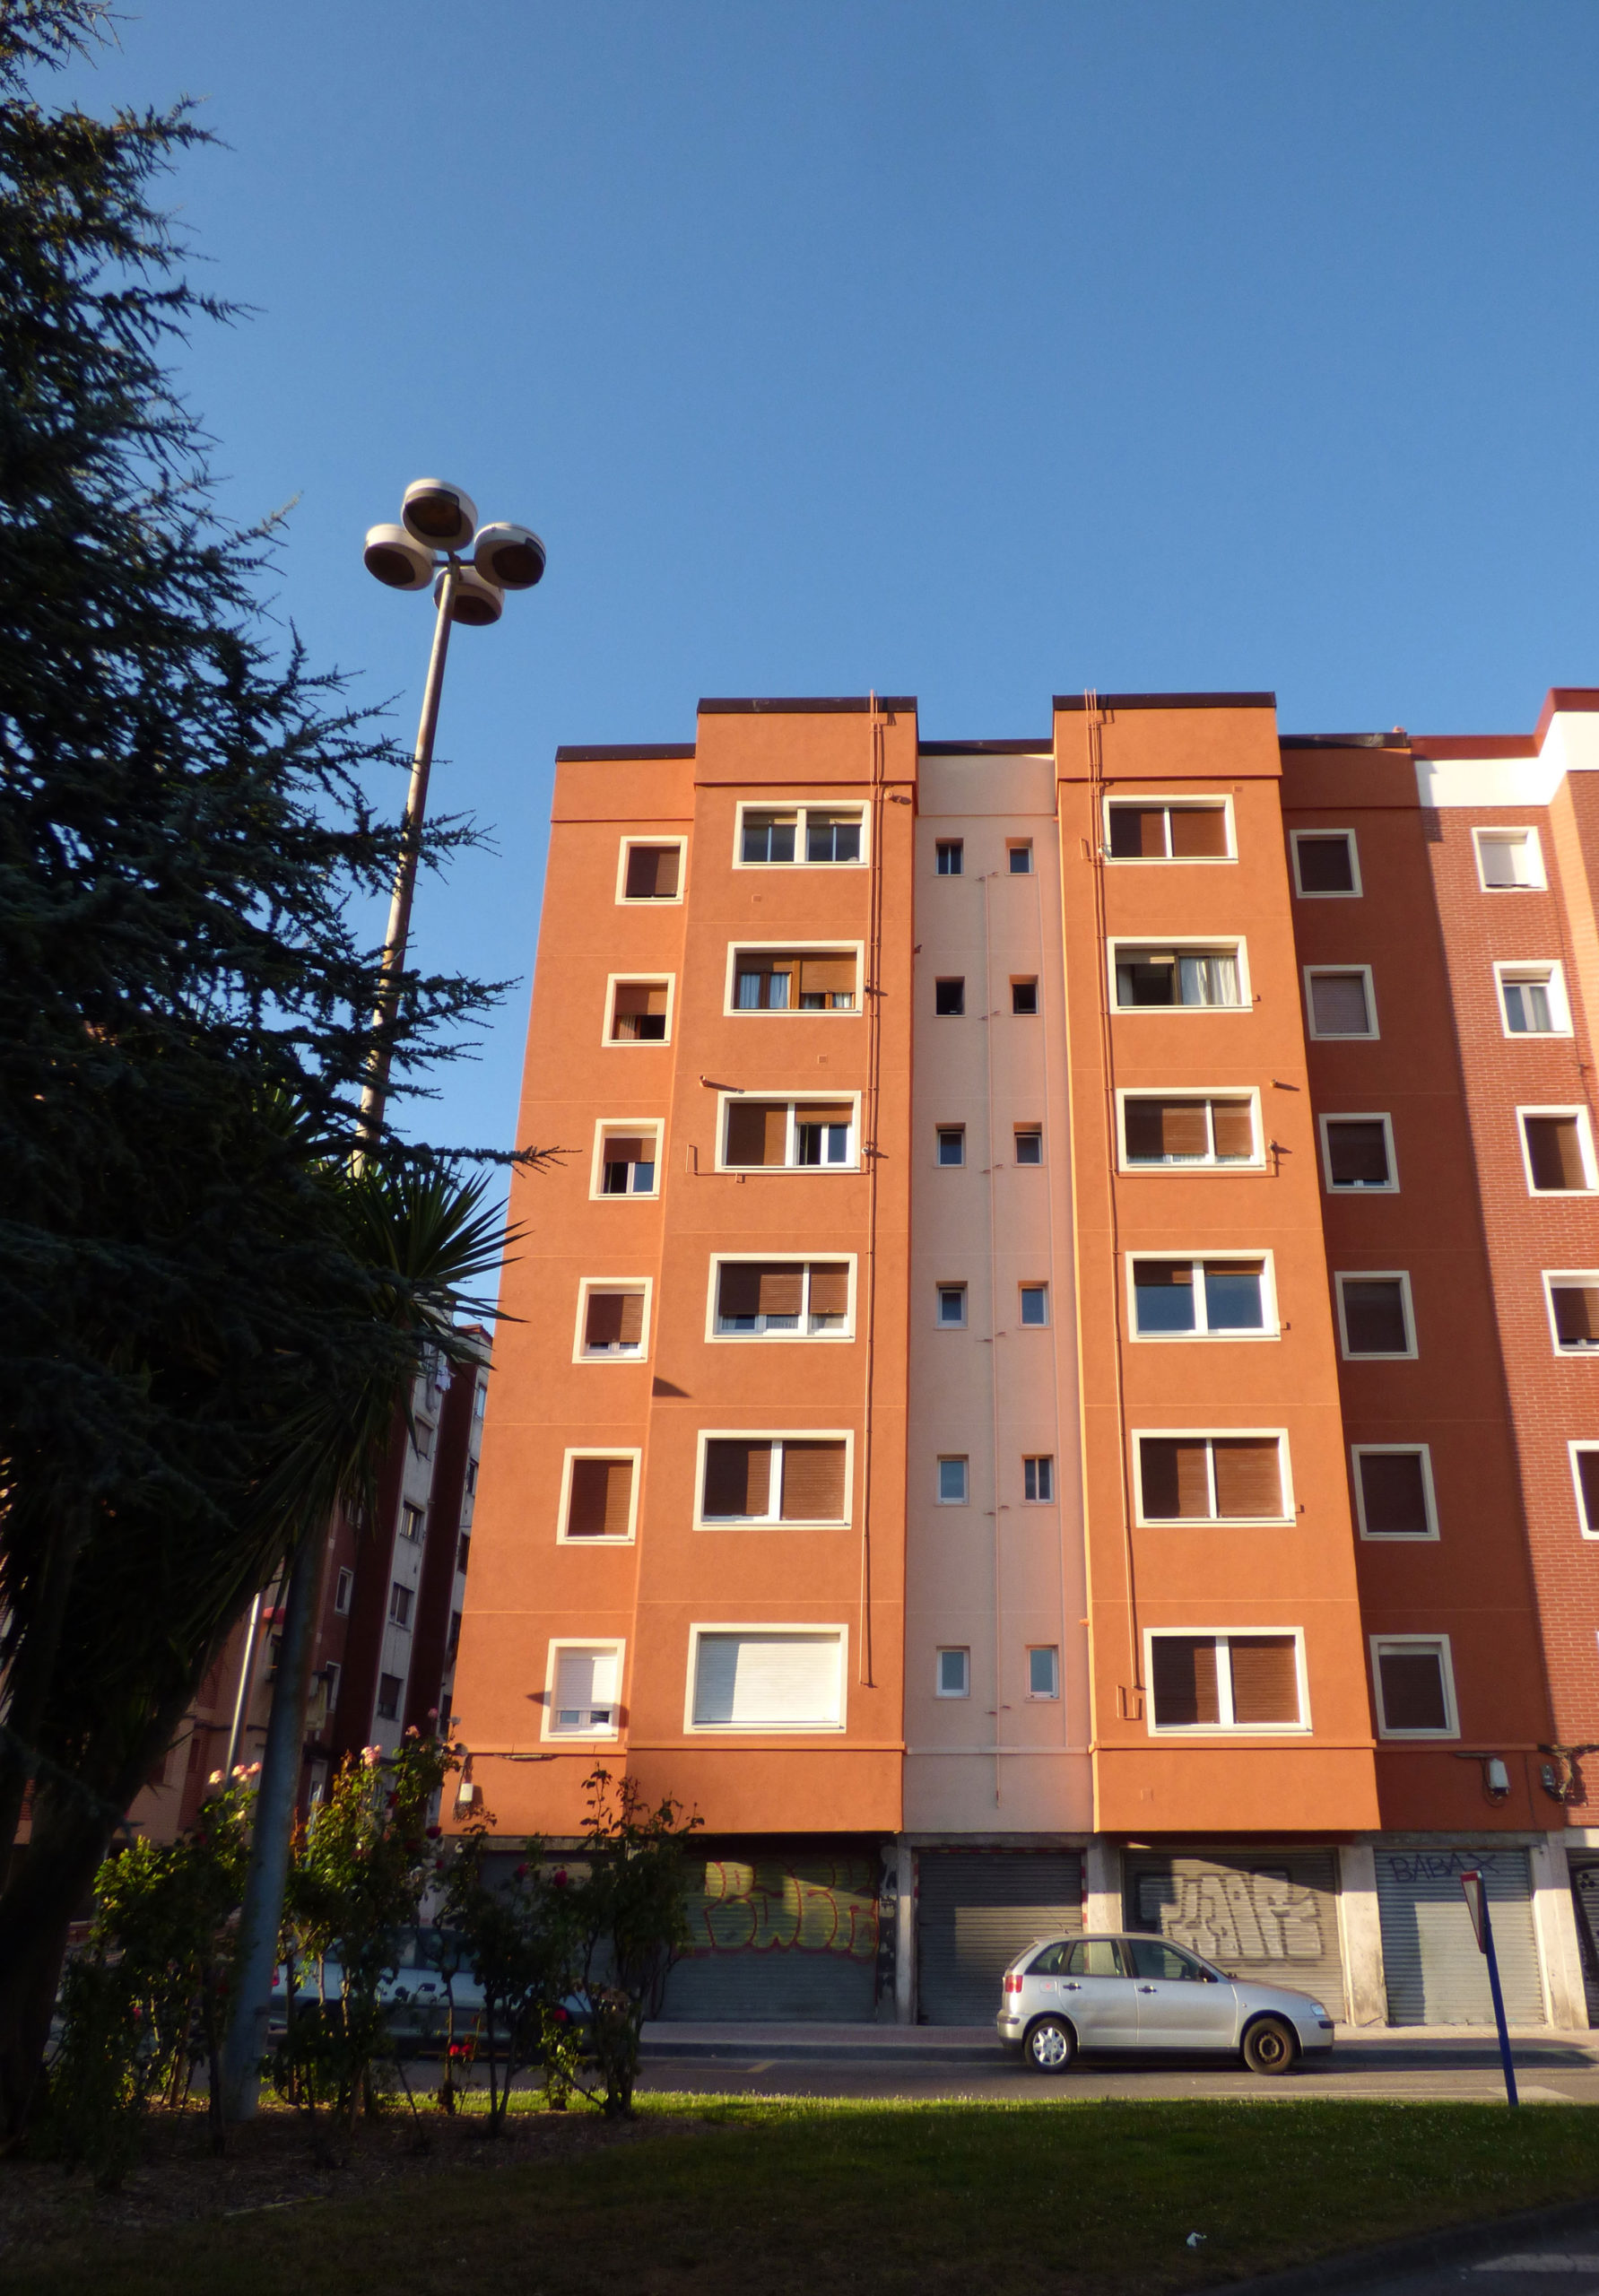 Rehabilitación energética de fachadas y cubierta en Barakaldo